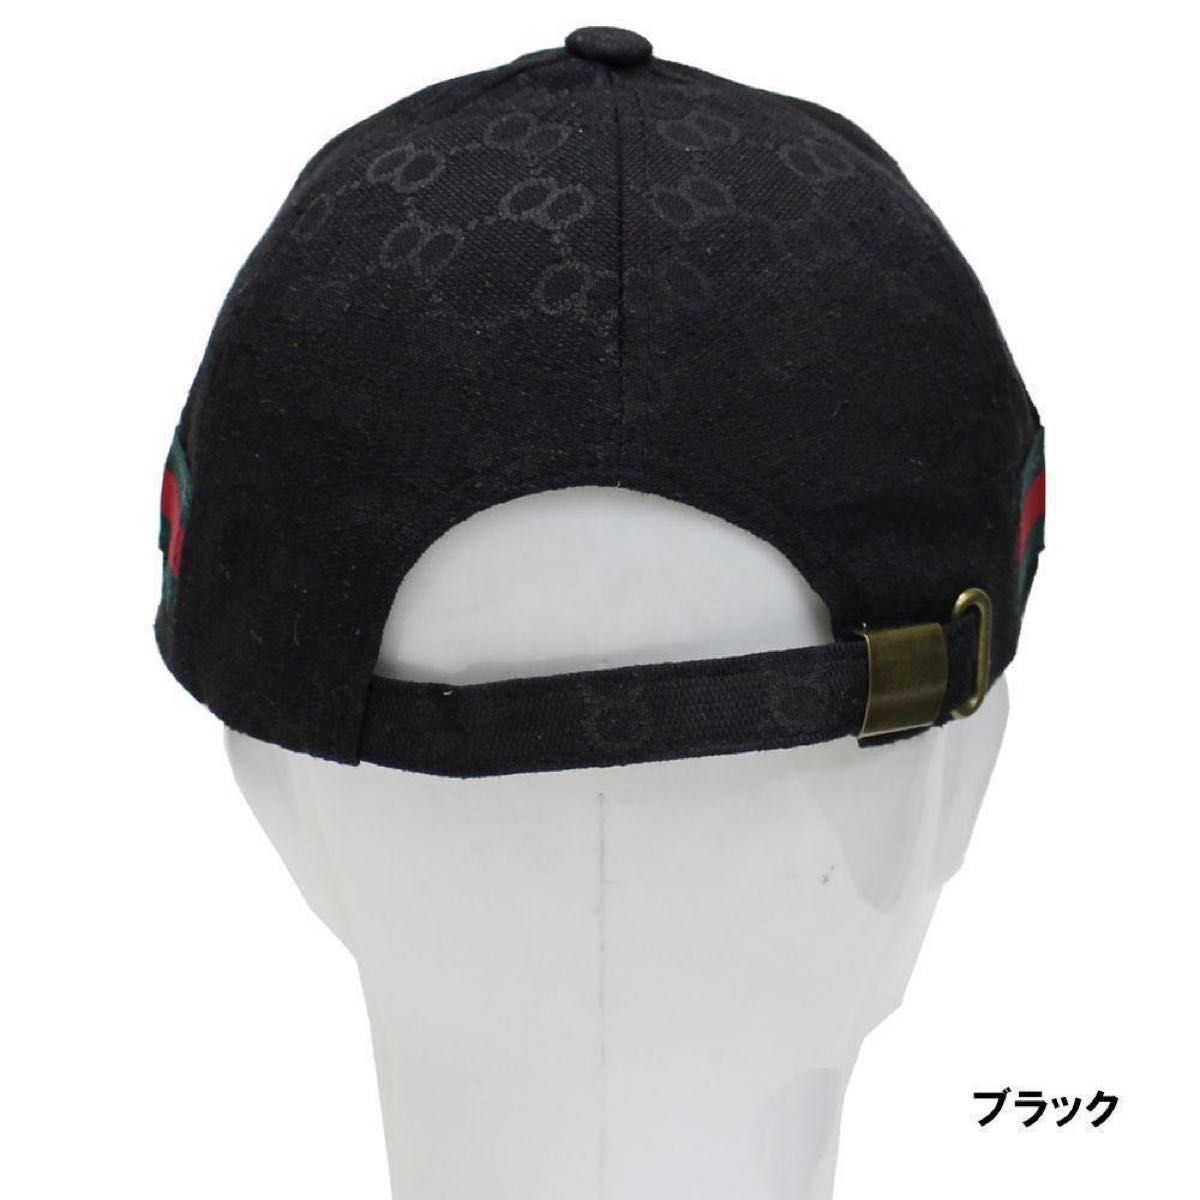 帽子 メンズ レディース カジュアル キャップ モノグラム Oライン 男女兼用 メンズキャップ レディースキャップ ブラック